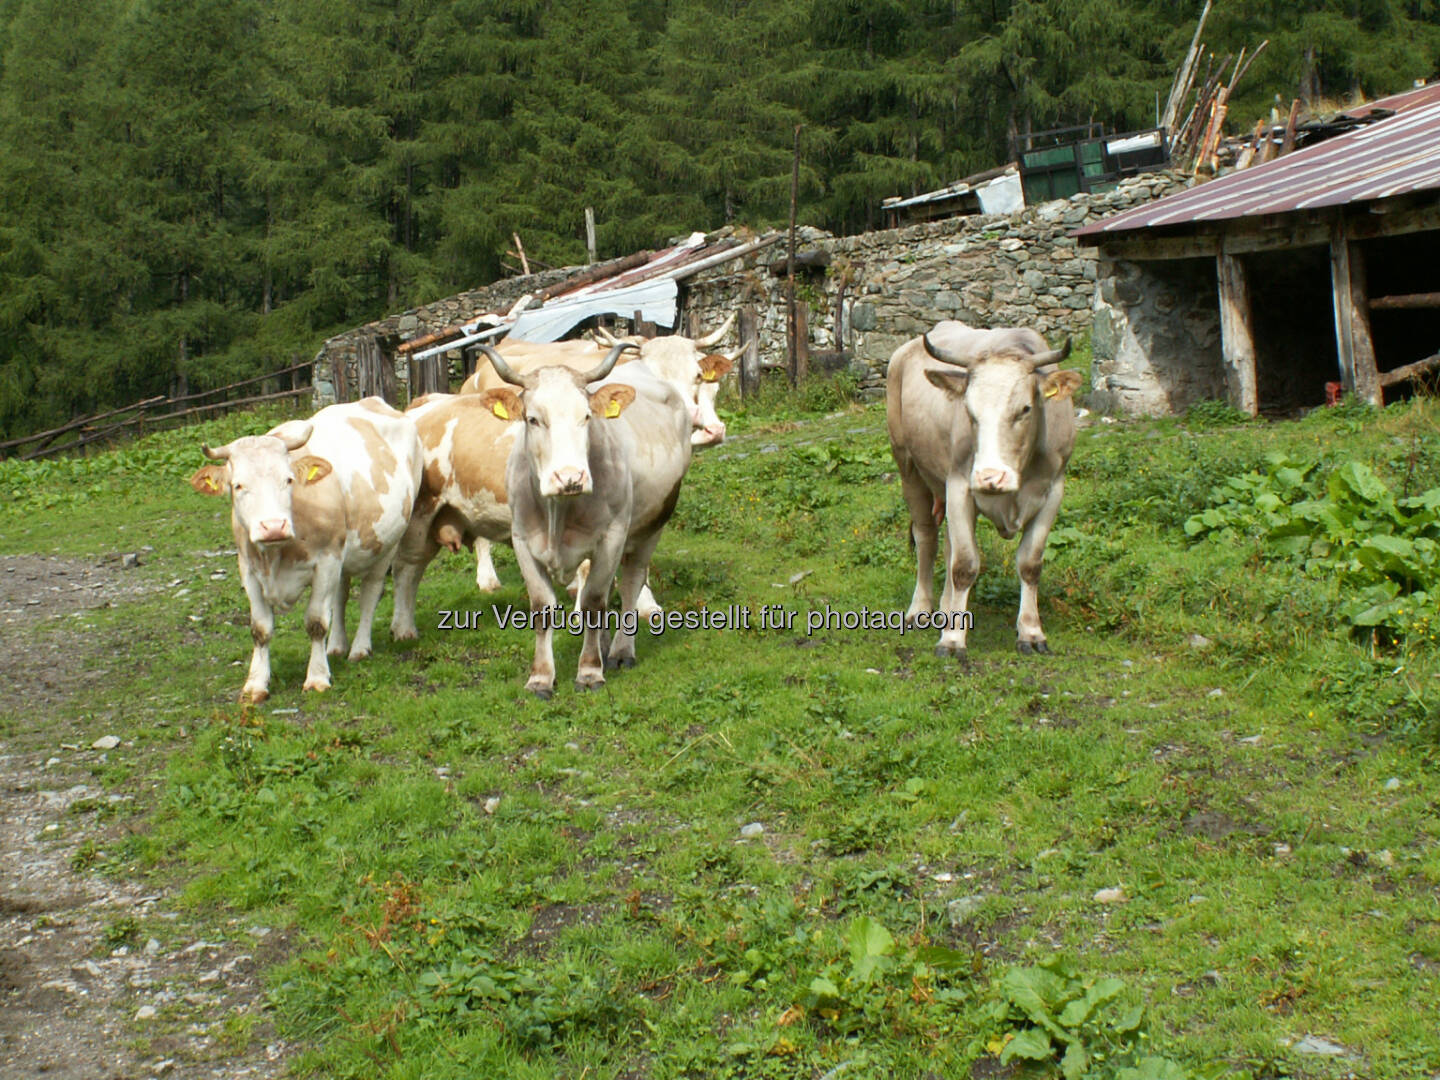 Kuh, Rind - Naturfreunde Österreich: Richtiger Umgang mit Rinderherden beim Wandern!  (c) Doris Winder
Fotocredit:Naturfreunde Österreich